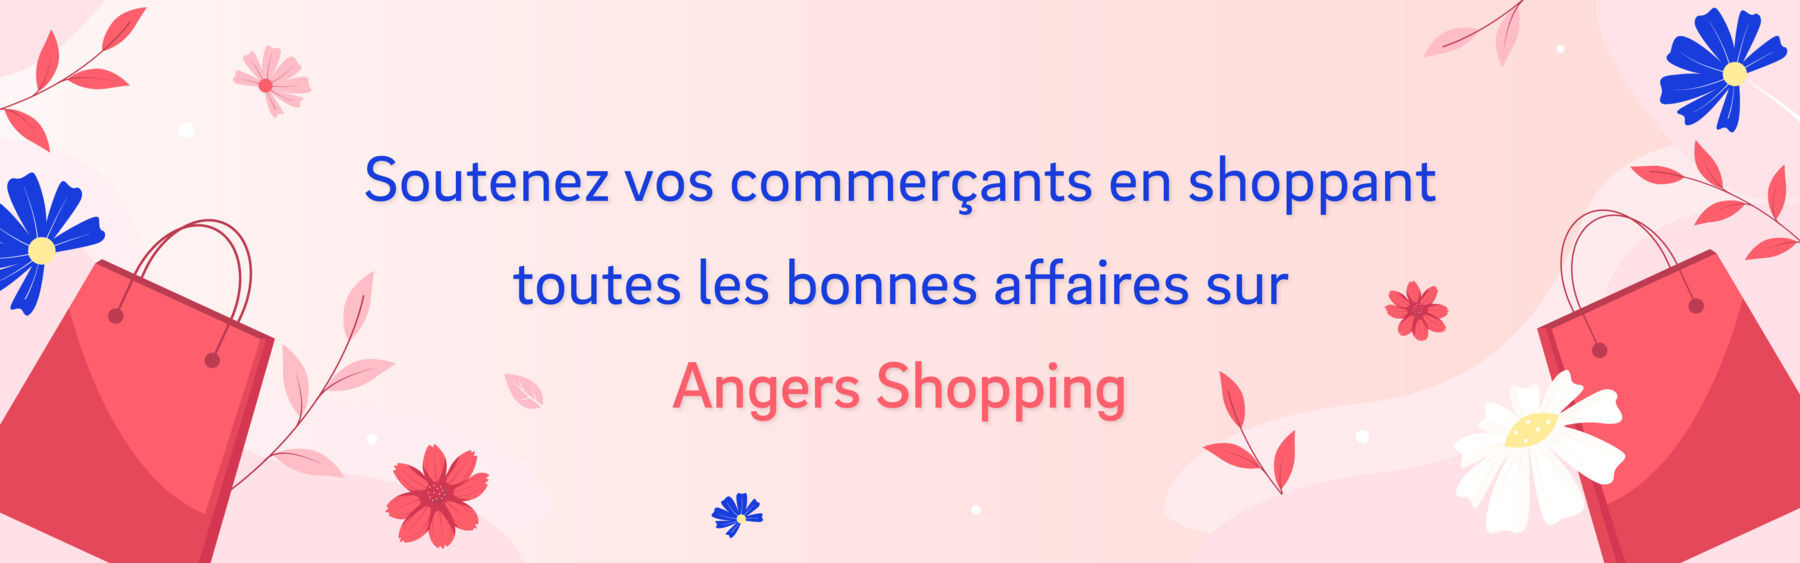 Bienvenue sur Angers Shopping !